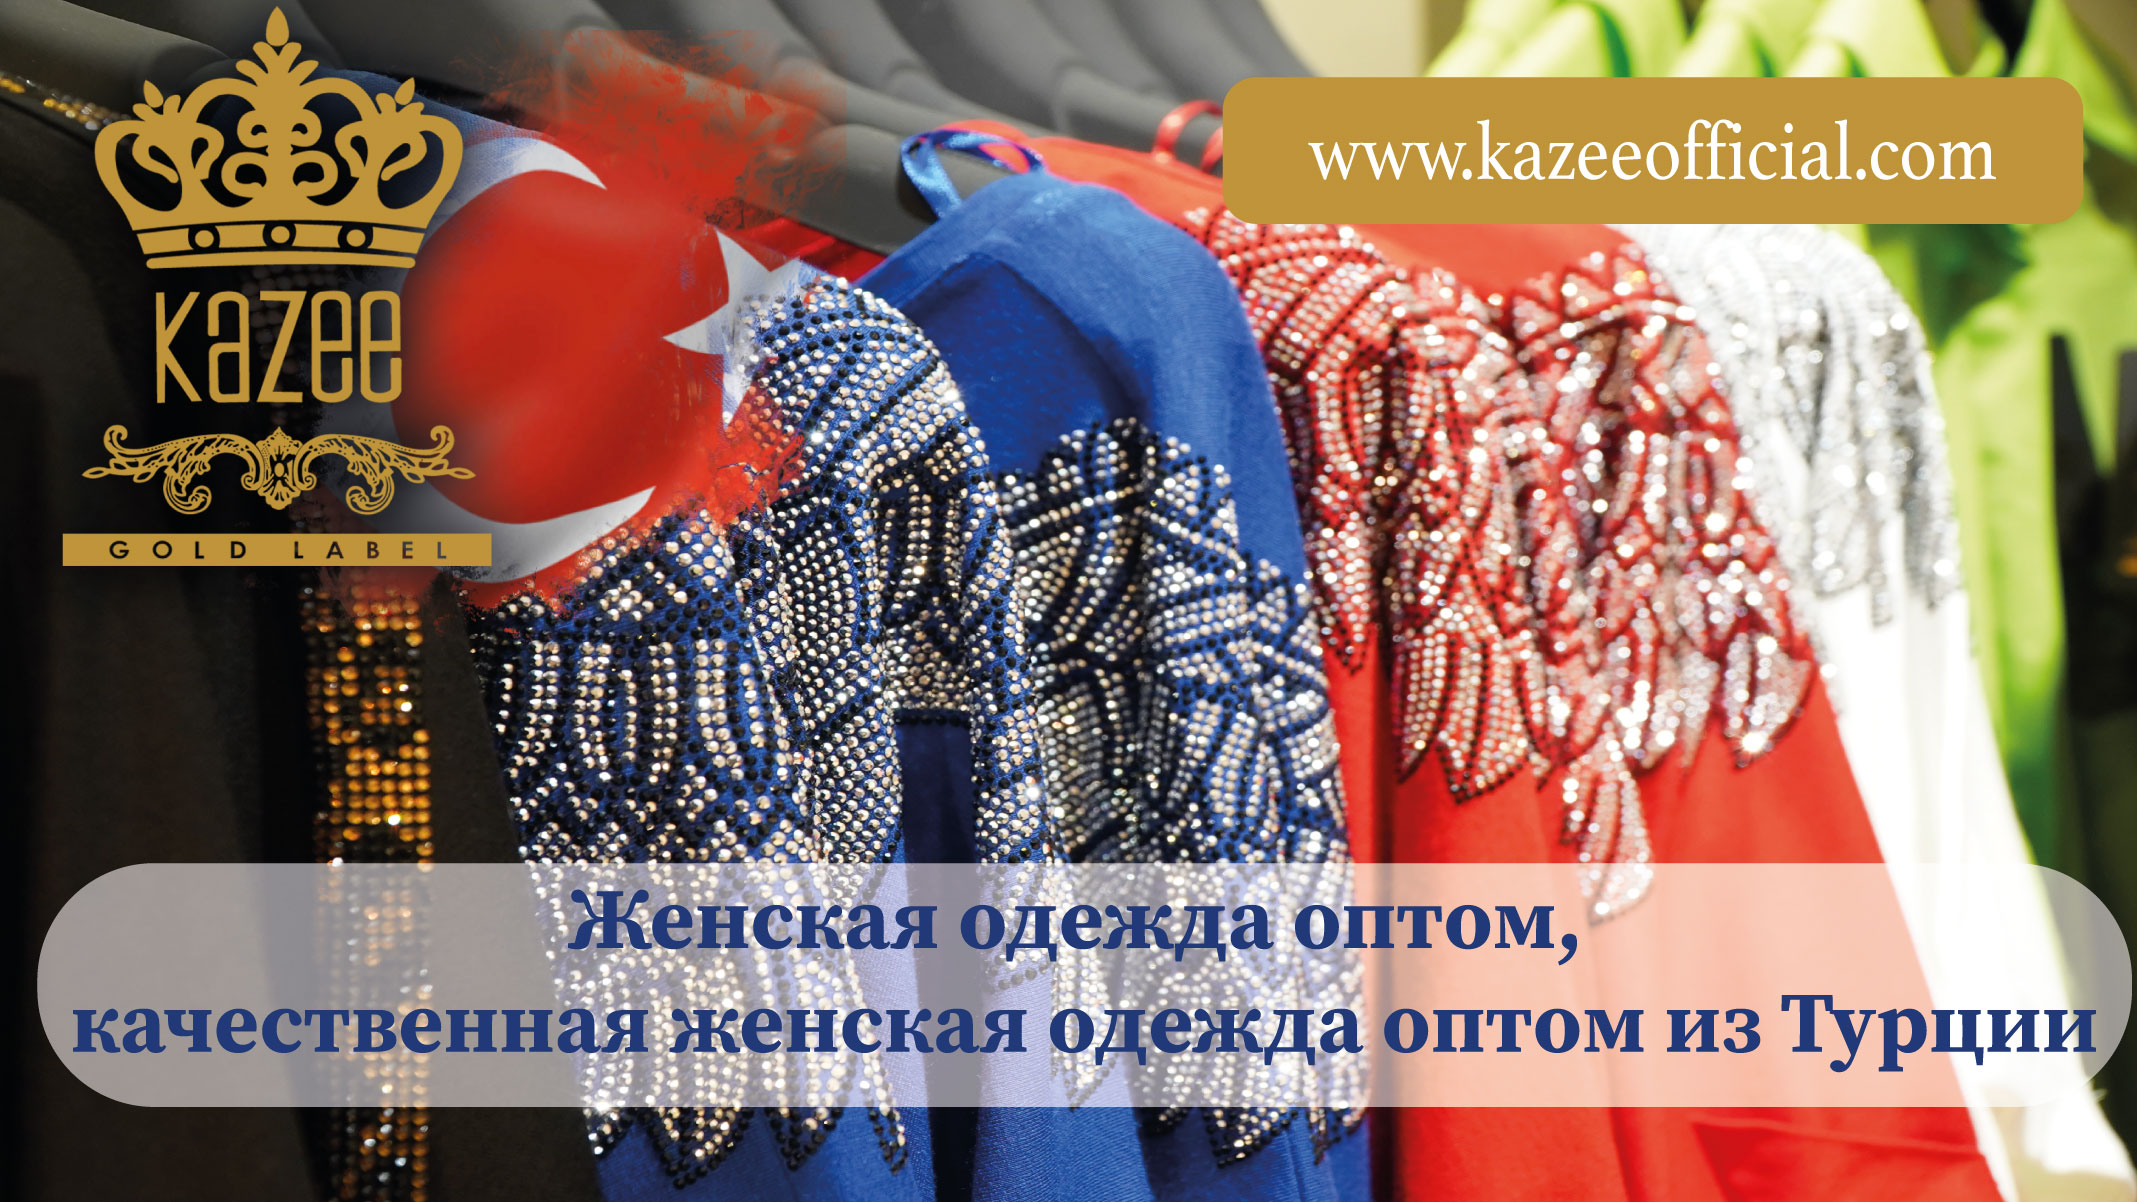 Großhandel für Damenbekleidung, Großhandel für hochwertige Damenbekleidung aus der Türkei.